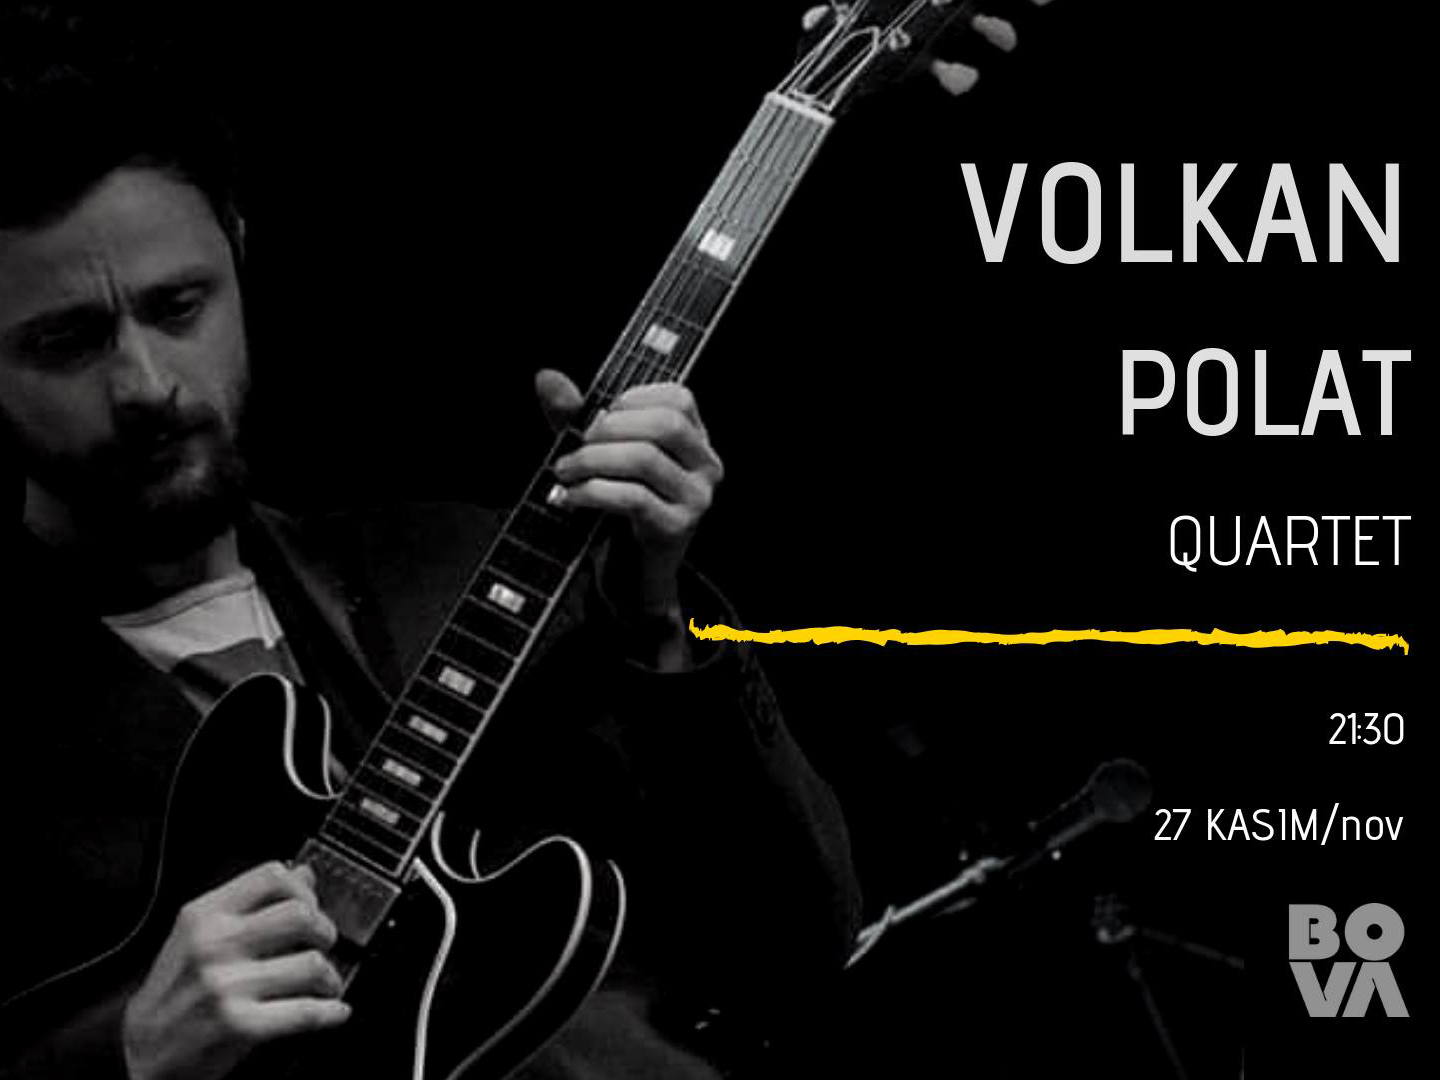 Volkan Polat Quartet